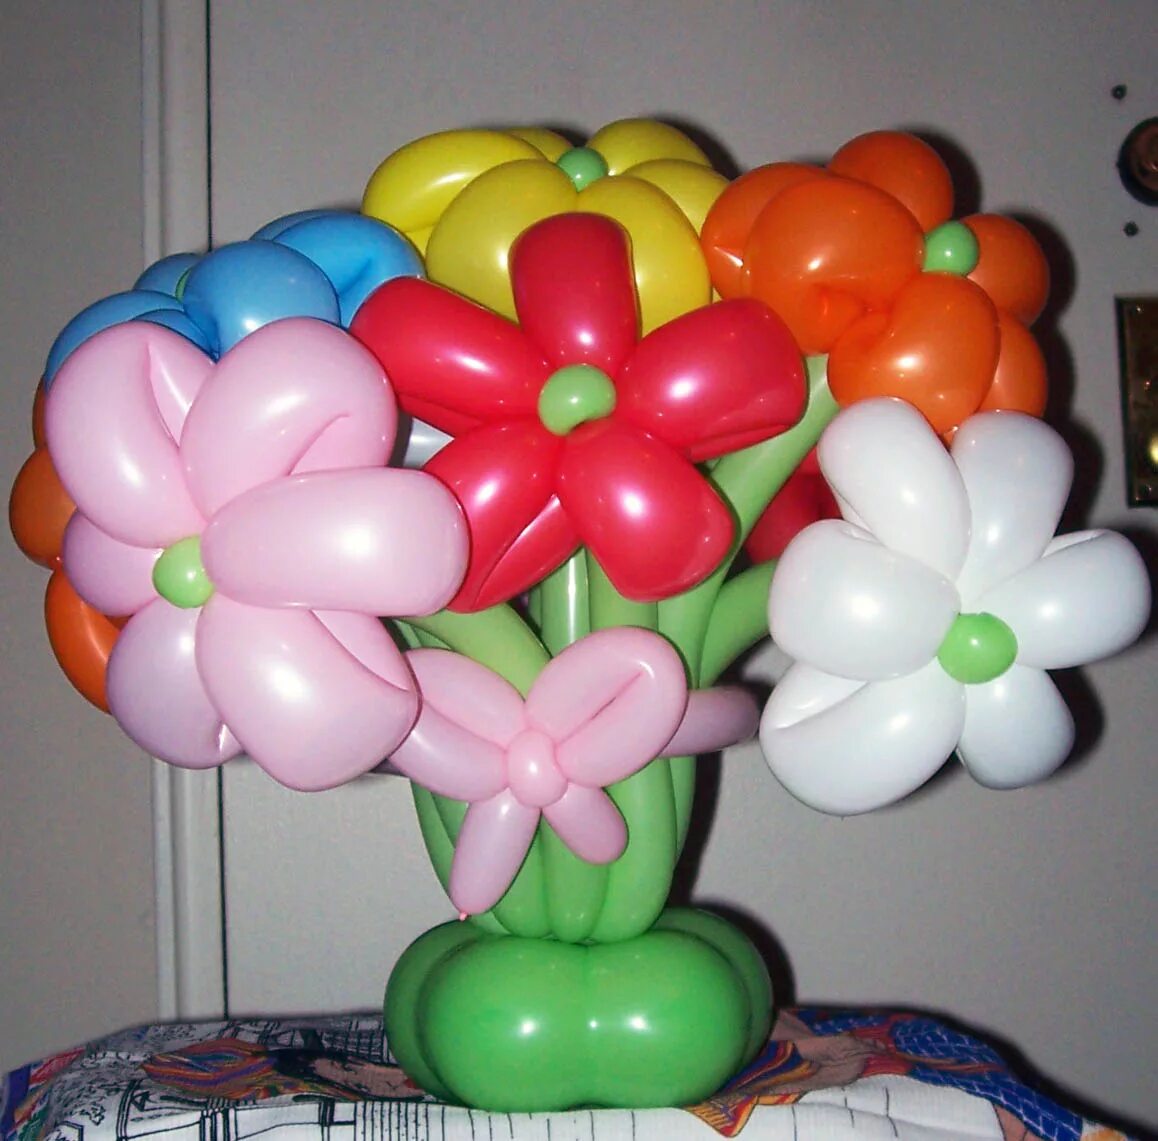 Моделирование из шаров. Цветы из воздушных шаров. Моделирование из шариков. Цветы из шаров для моделирования. Моделирование из воздушных шариков.